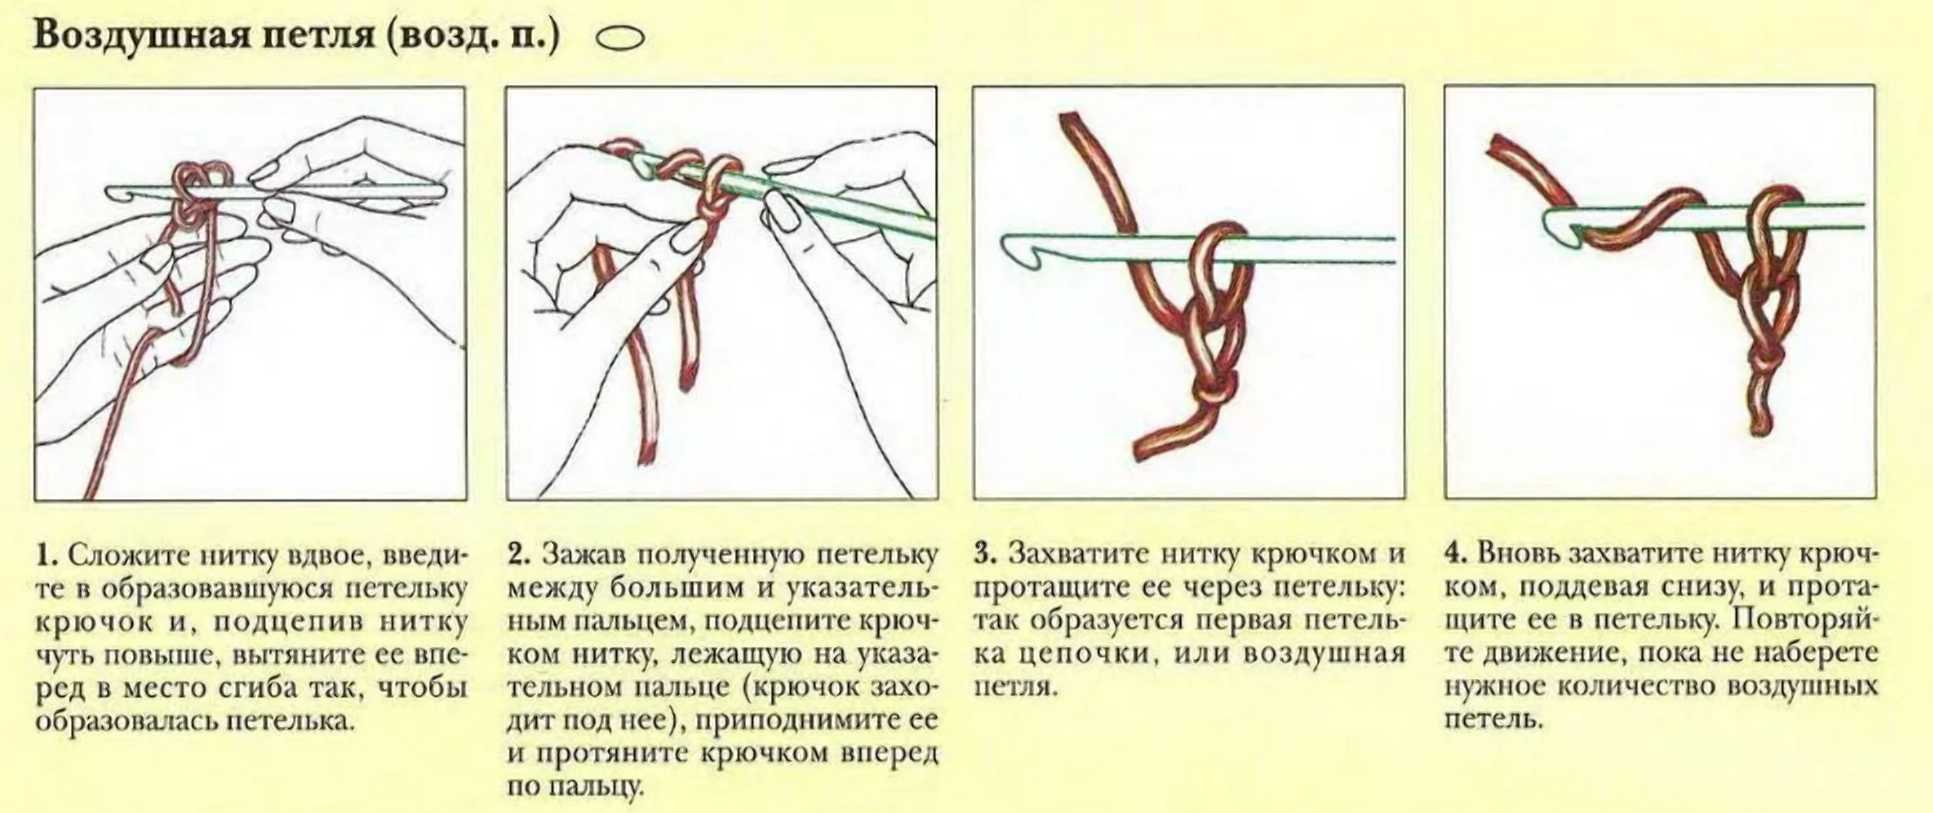 Вязание крючком для начинающих пошагово с фото шарф толстой нитью